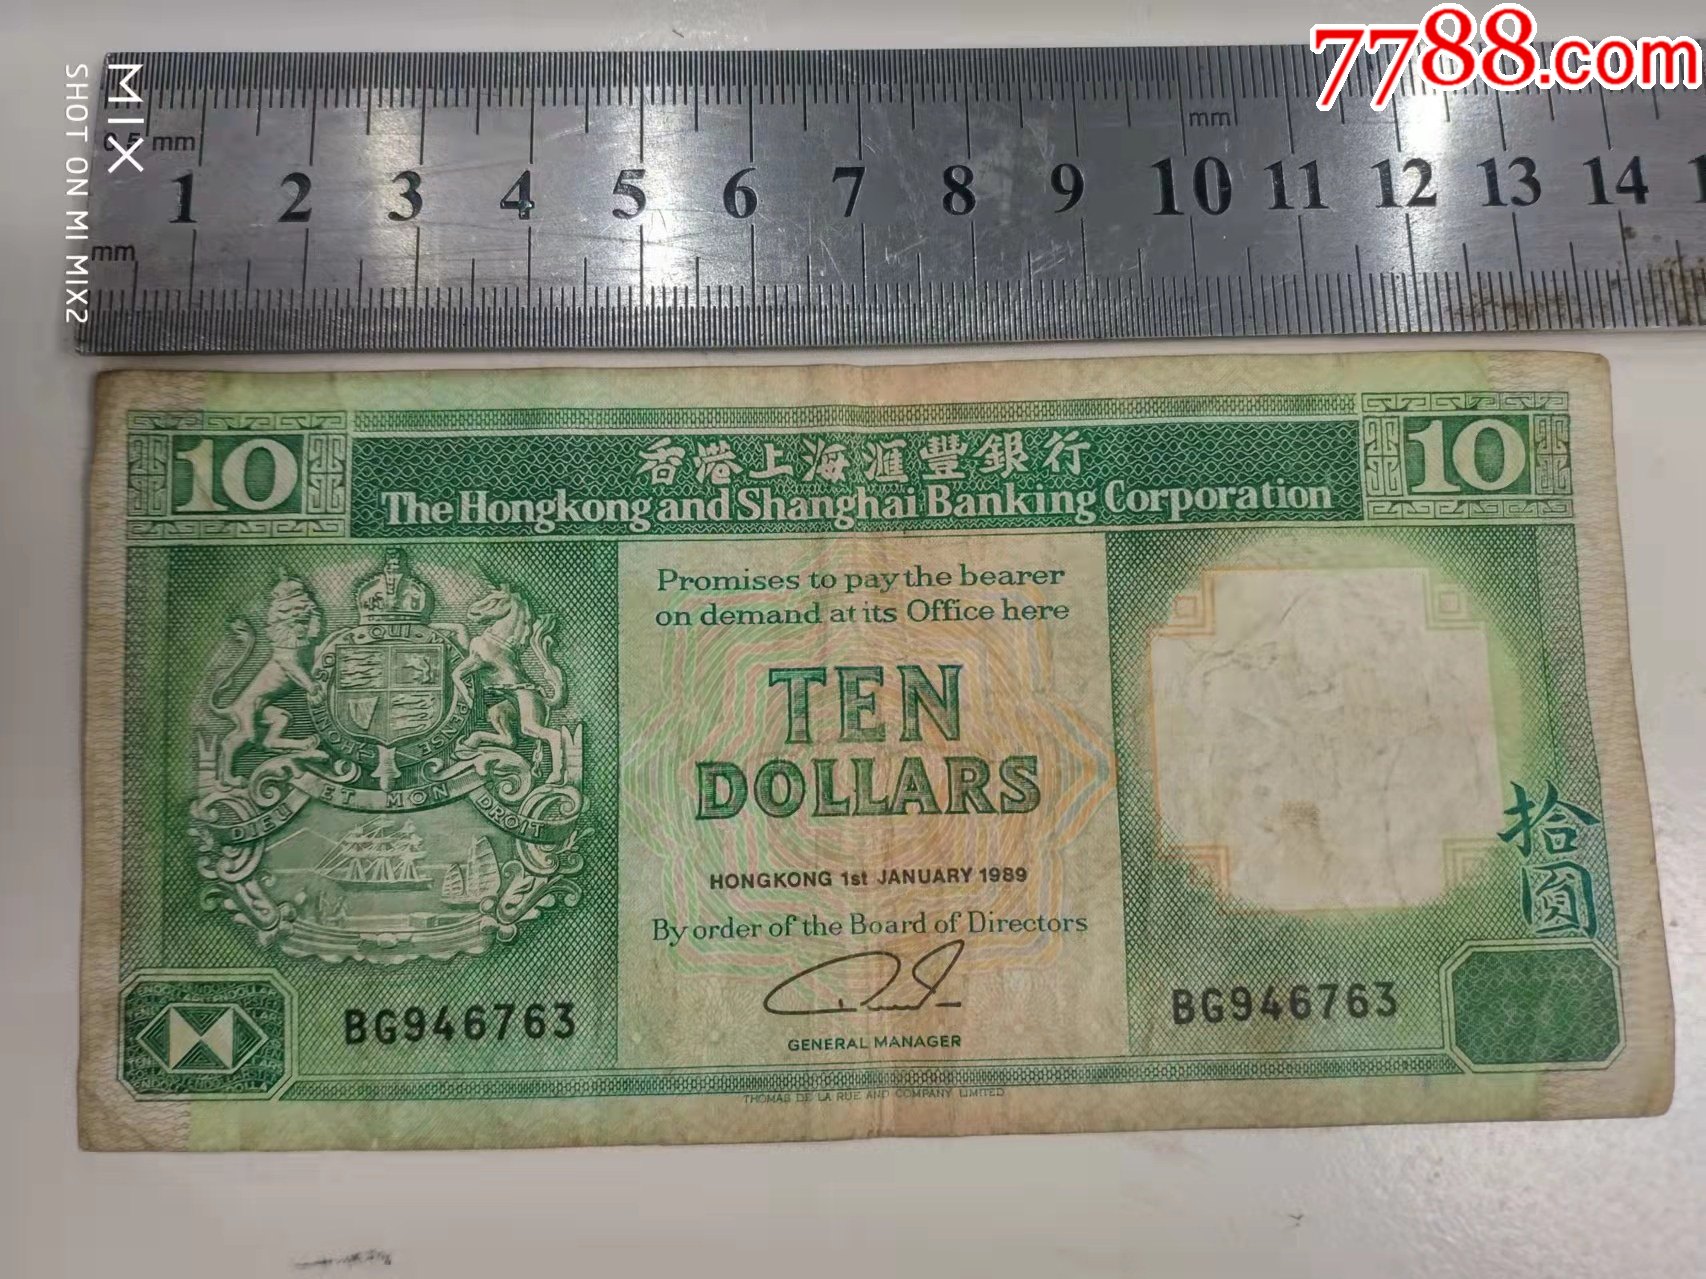 1989年香港上海汇丰银行发行10元港币bg946763号